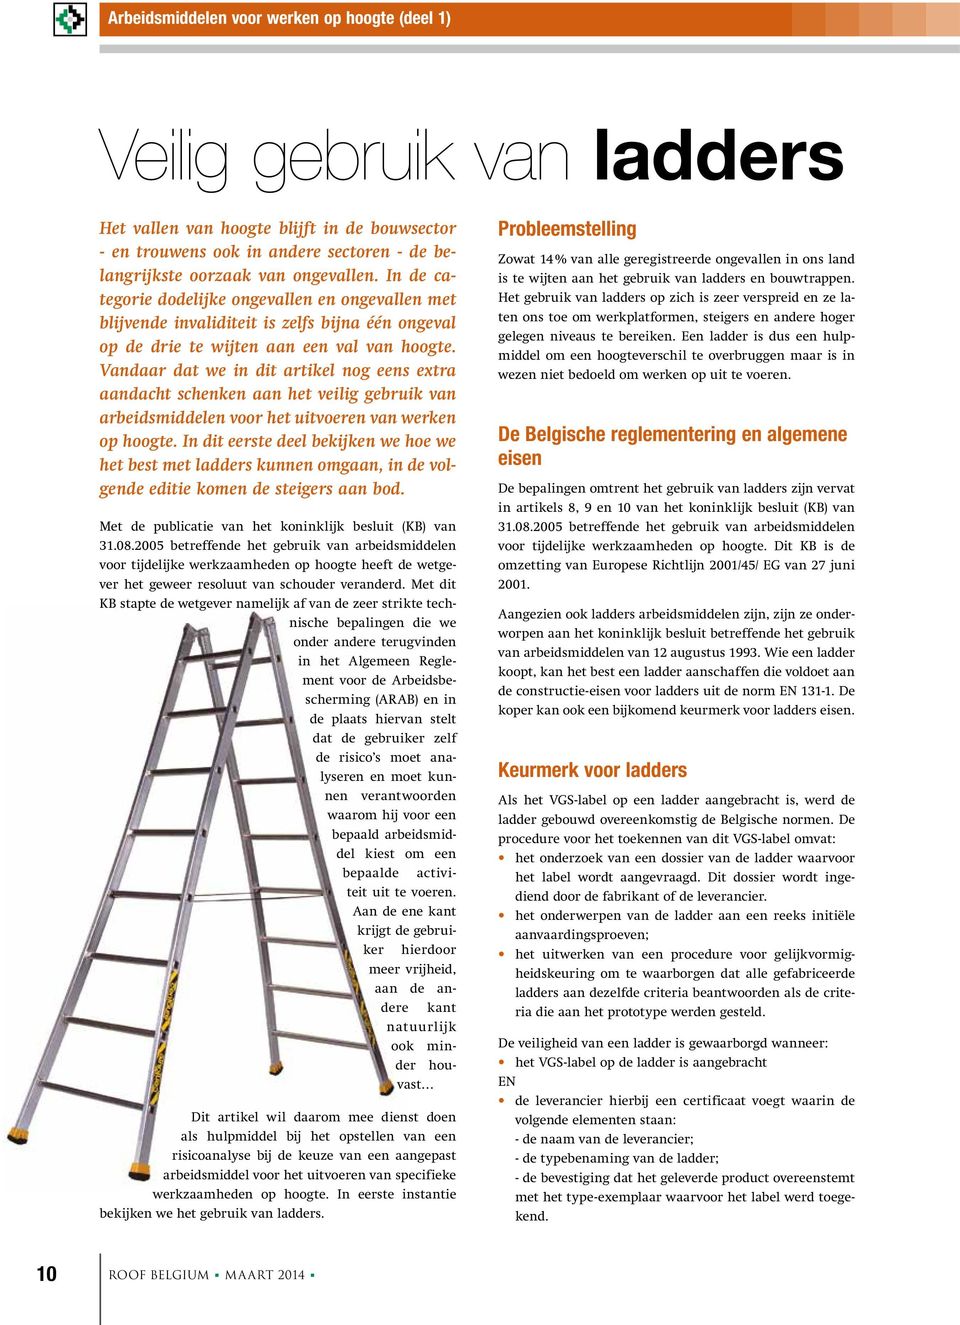 Vandaar dat we in dit artikel nog eens extra aandacht schenken aan het veilig gebruik van arbeidsmiddelen voor het uitvoeren van werken op hoogte.